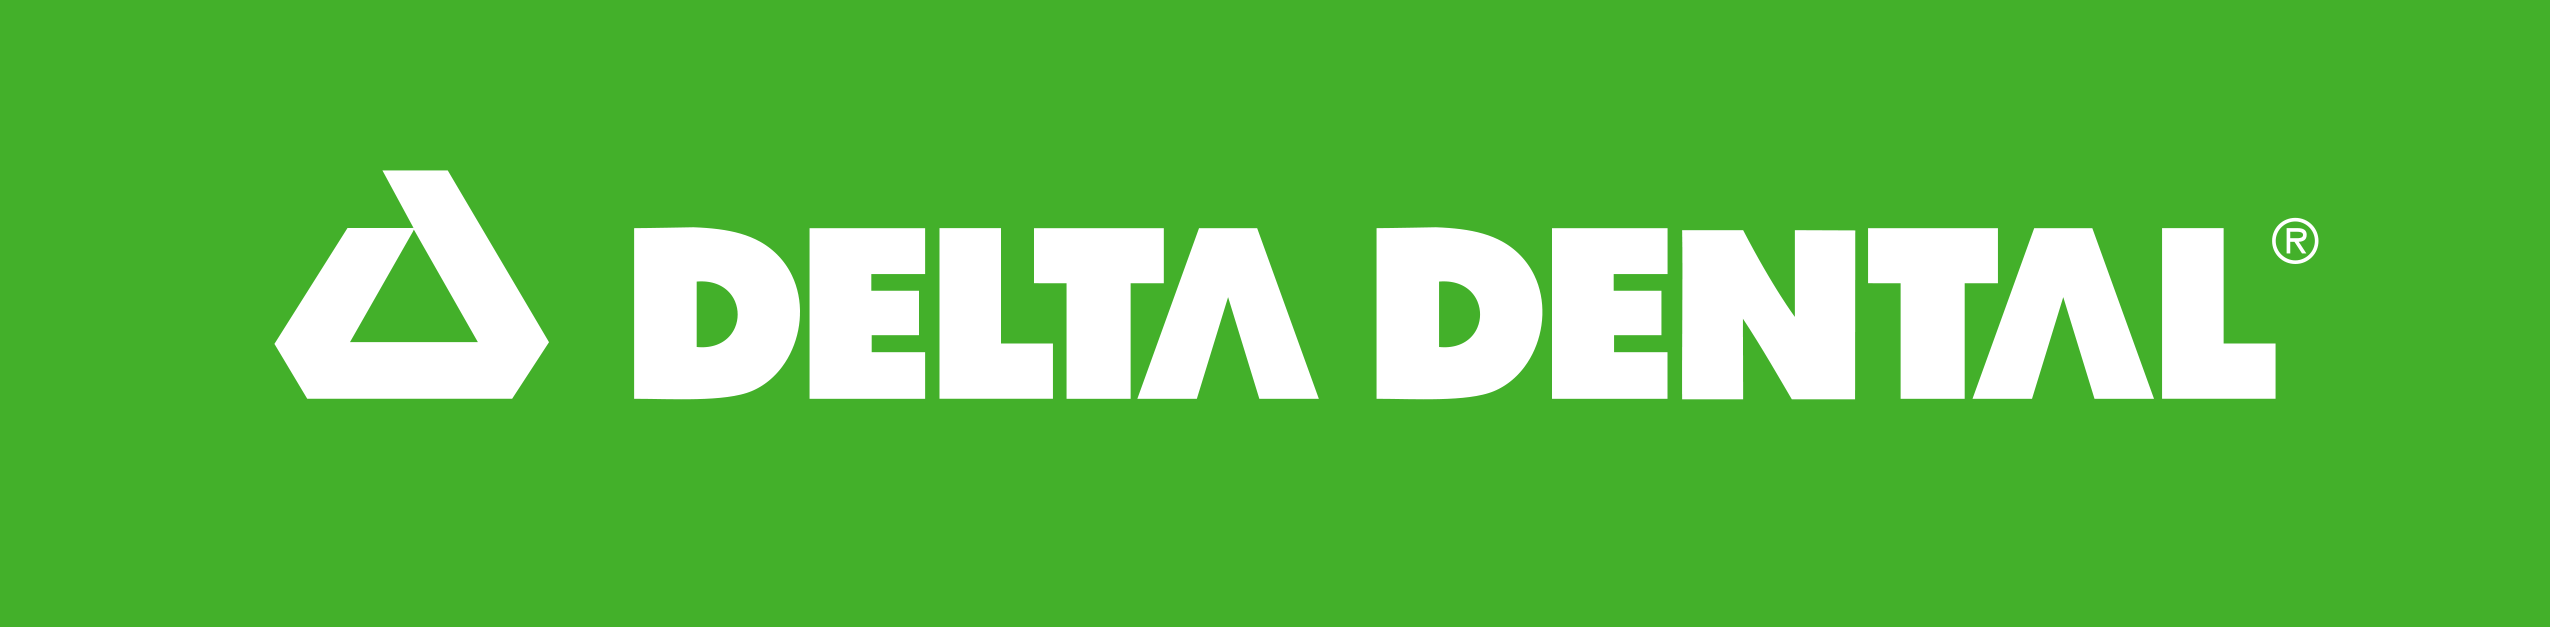 Sponsor Delta Dental